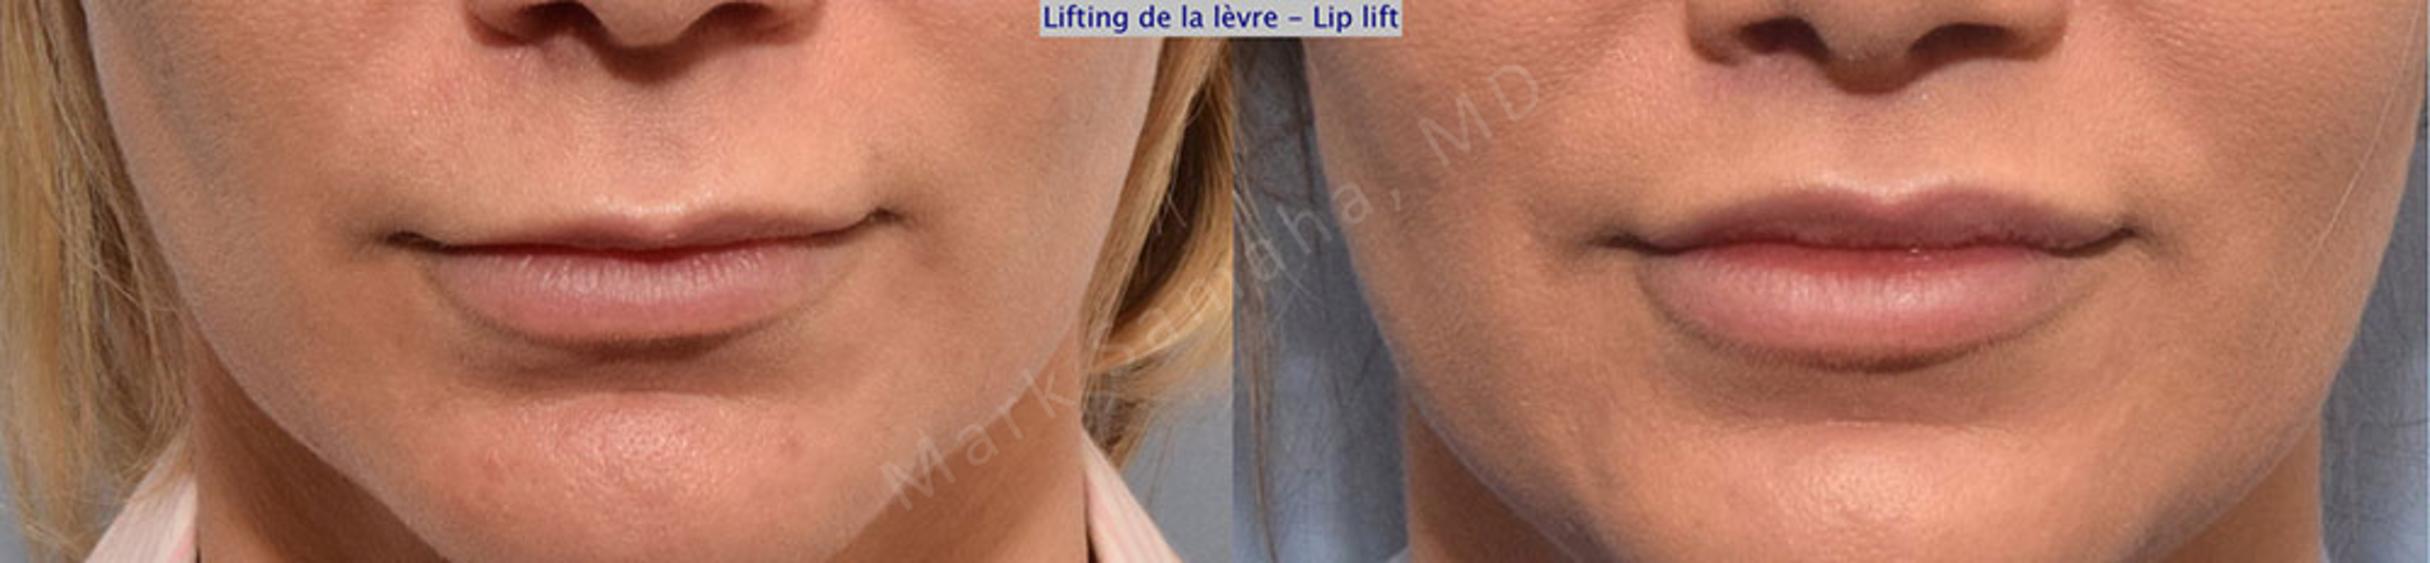 Before & After Lip Lift / Lifting de la lèvre supérieure Case 26 View #1 View in Mount Royal, QC